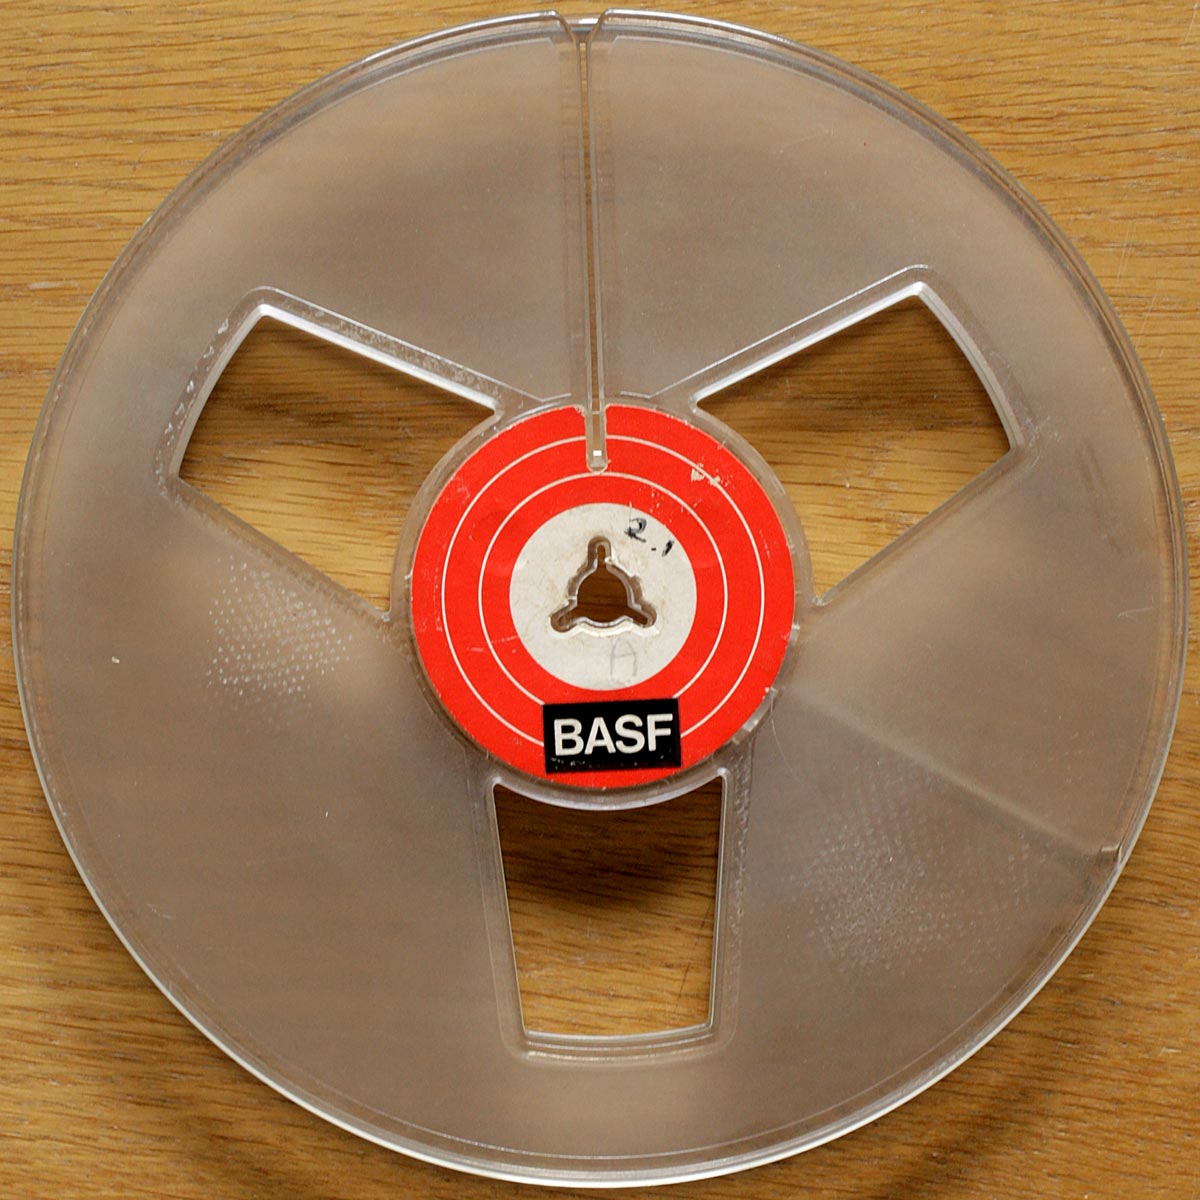 BASF • Bobine vide • Tonbandleerspule • Empty reel • Ø 18 cm • Occasion • Gebraucht • Used